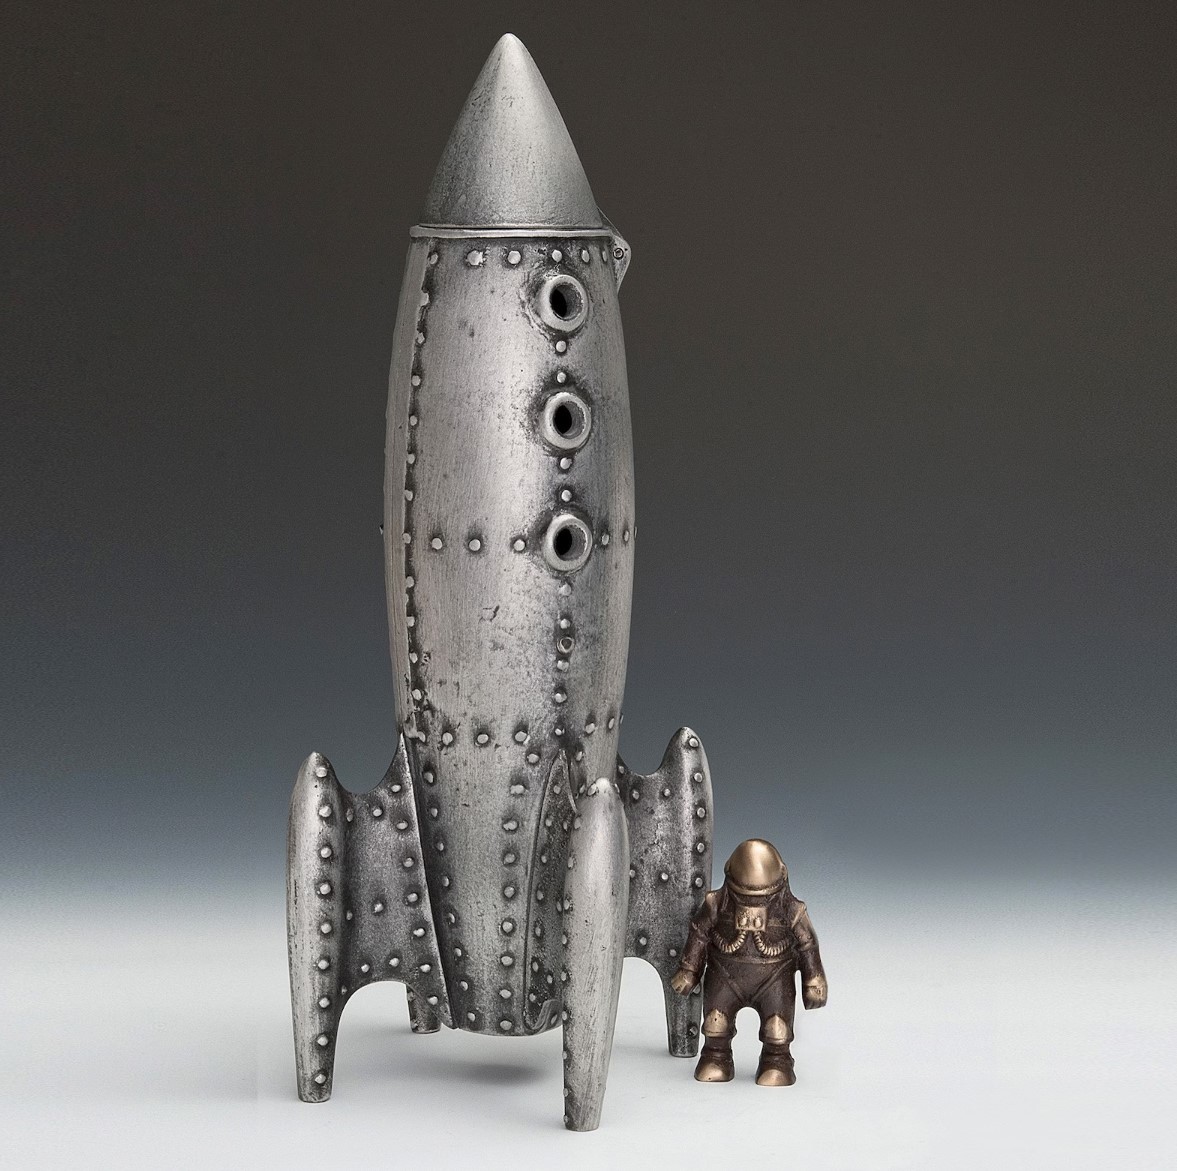 Лунная ракета и фигурка космонавта, сделан из металла художником, Изделия ручной работы, интерьер, разные товары, орнамент, объект